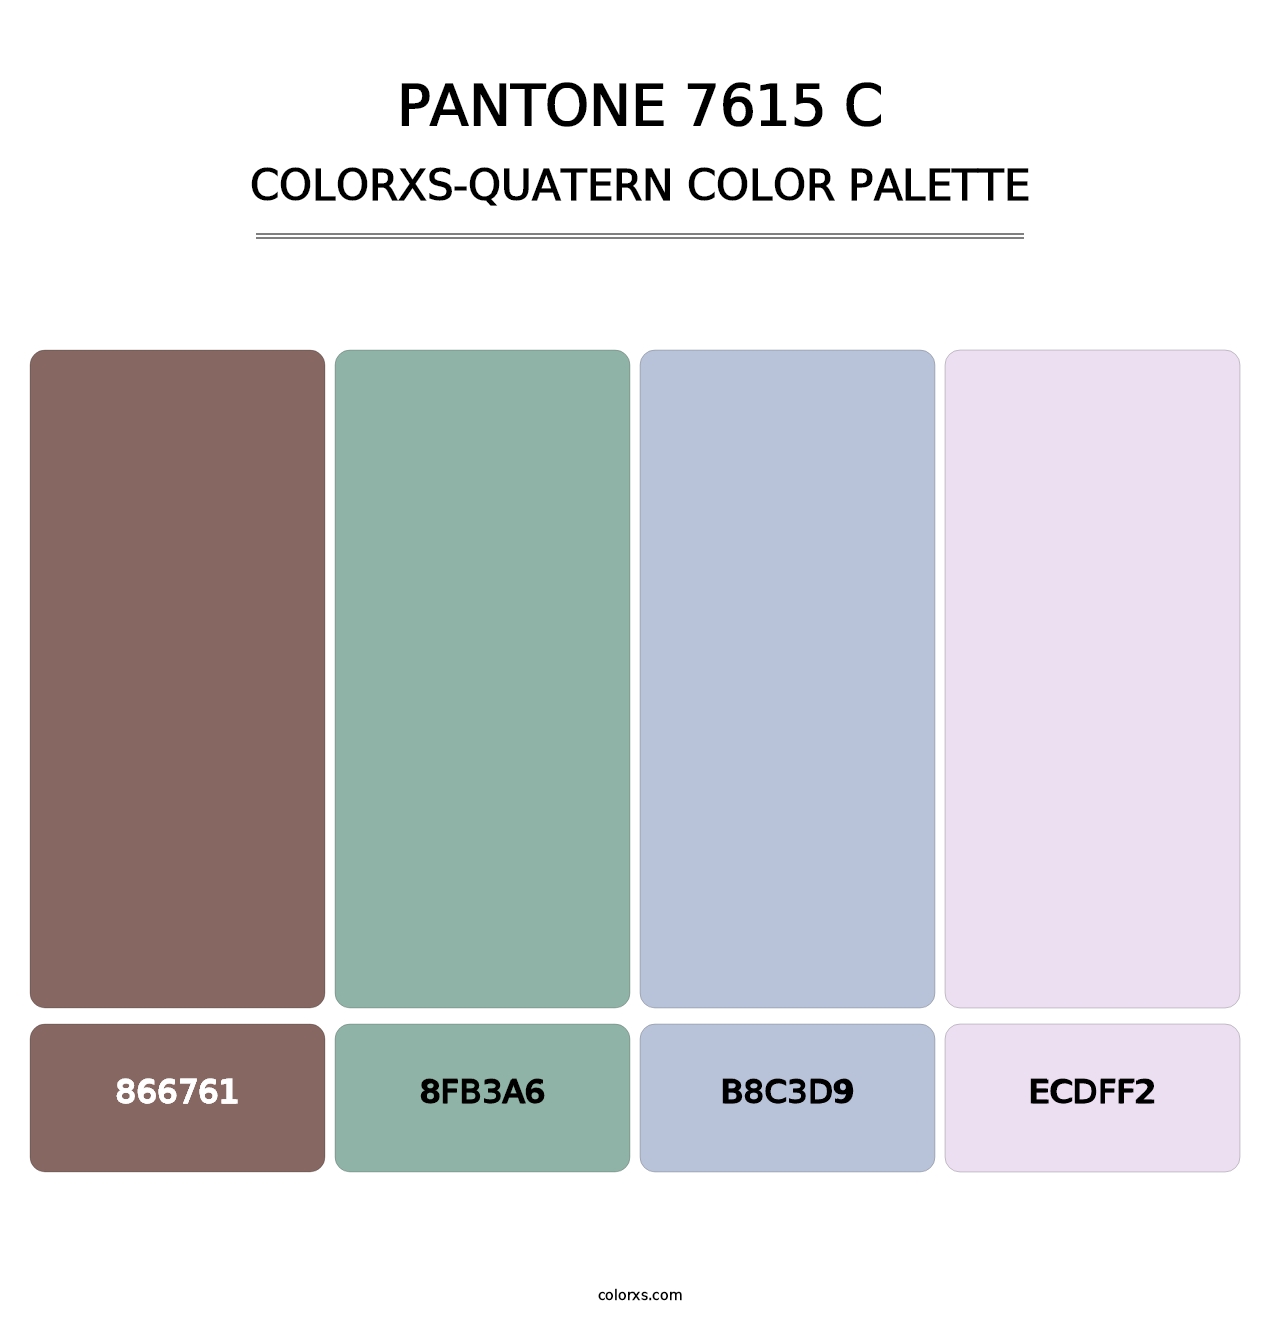 PANTONE 7615 C - Colorxs Quatern Palette